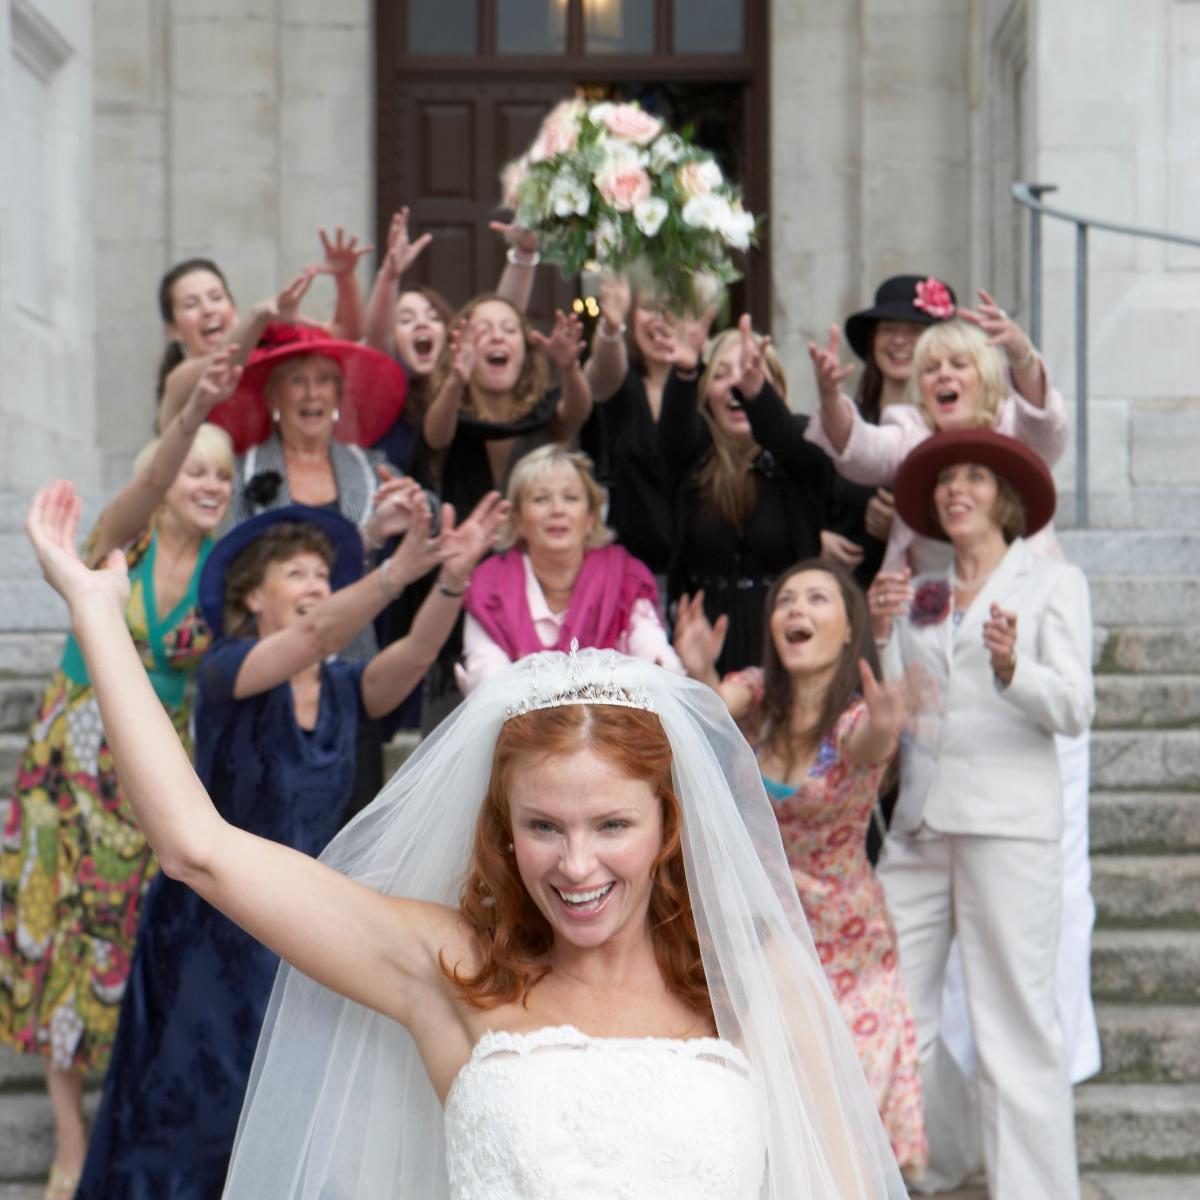 Bruden kaster buket til kvinderne bag hende efter brylluppet